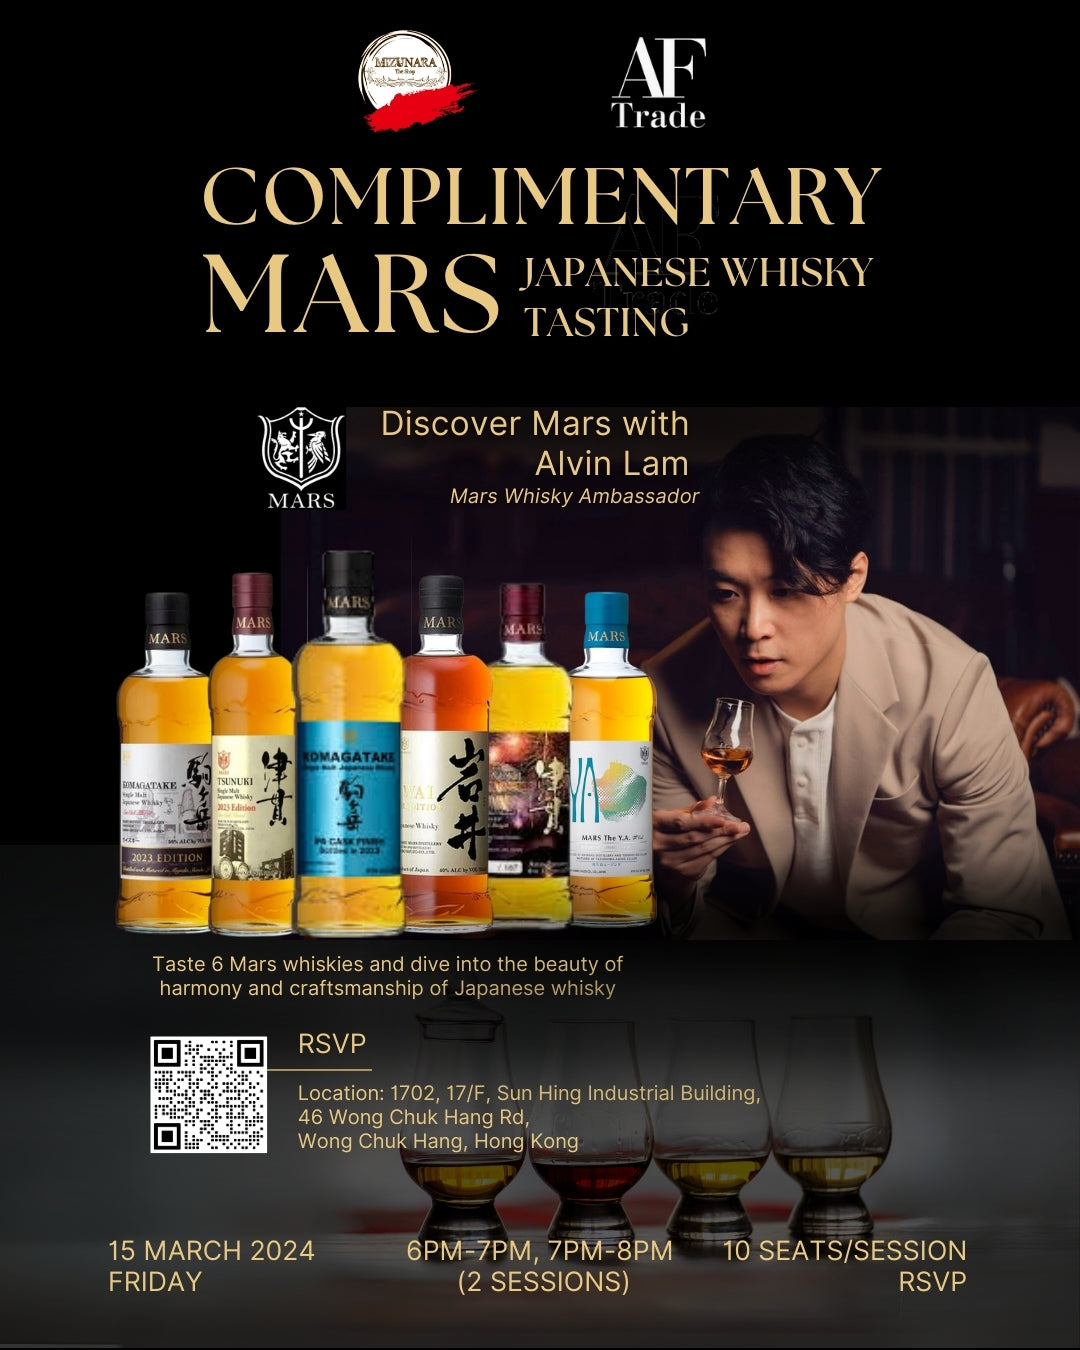 Discover Japanese Whisky Mars with Alvin, Mars Whisky Ambassador_Mizunaratheshop